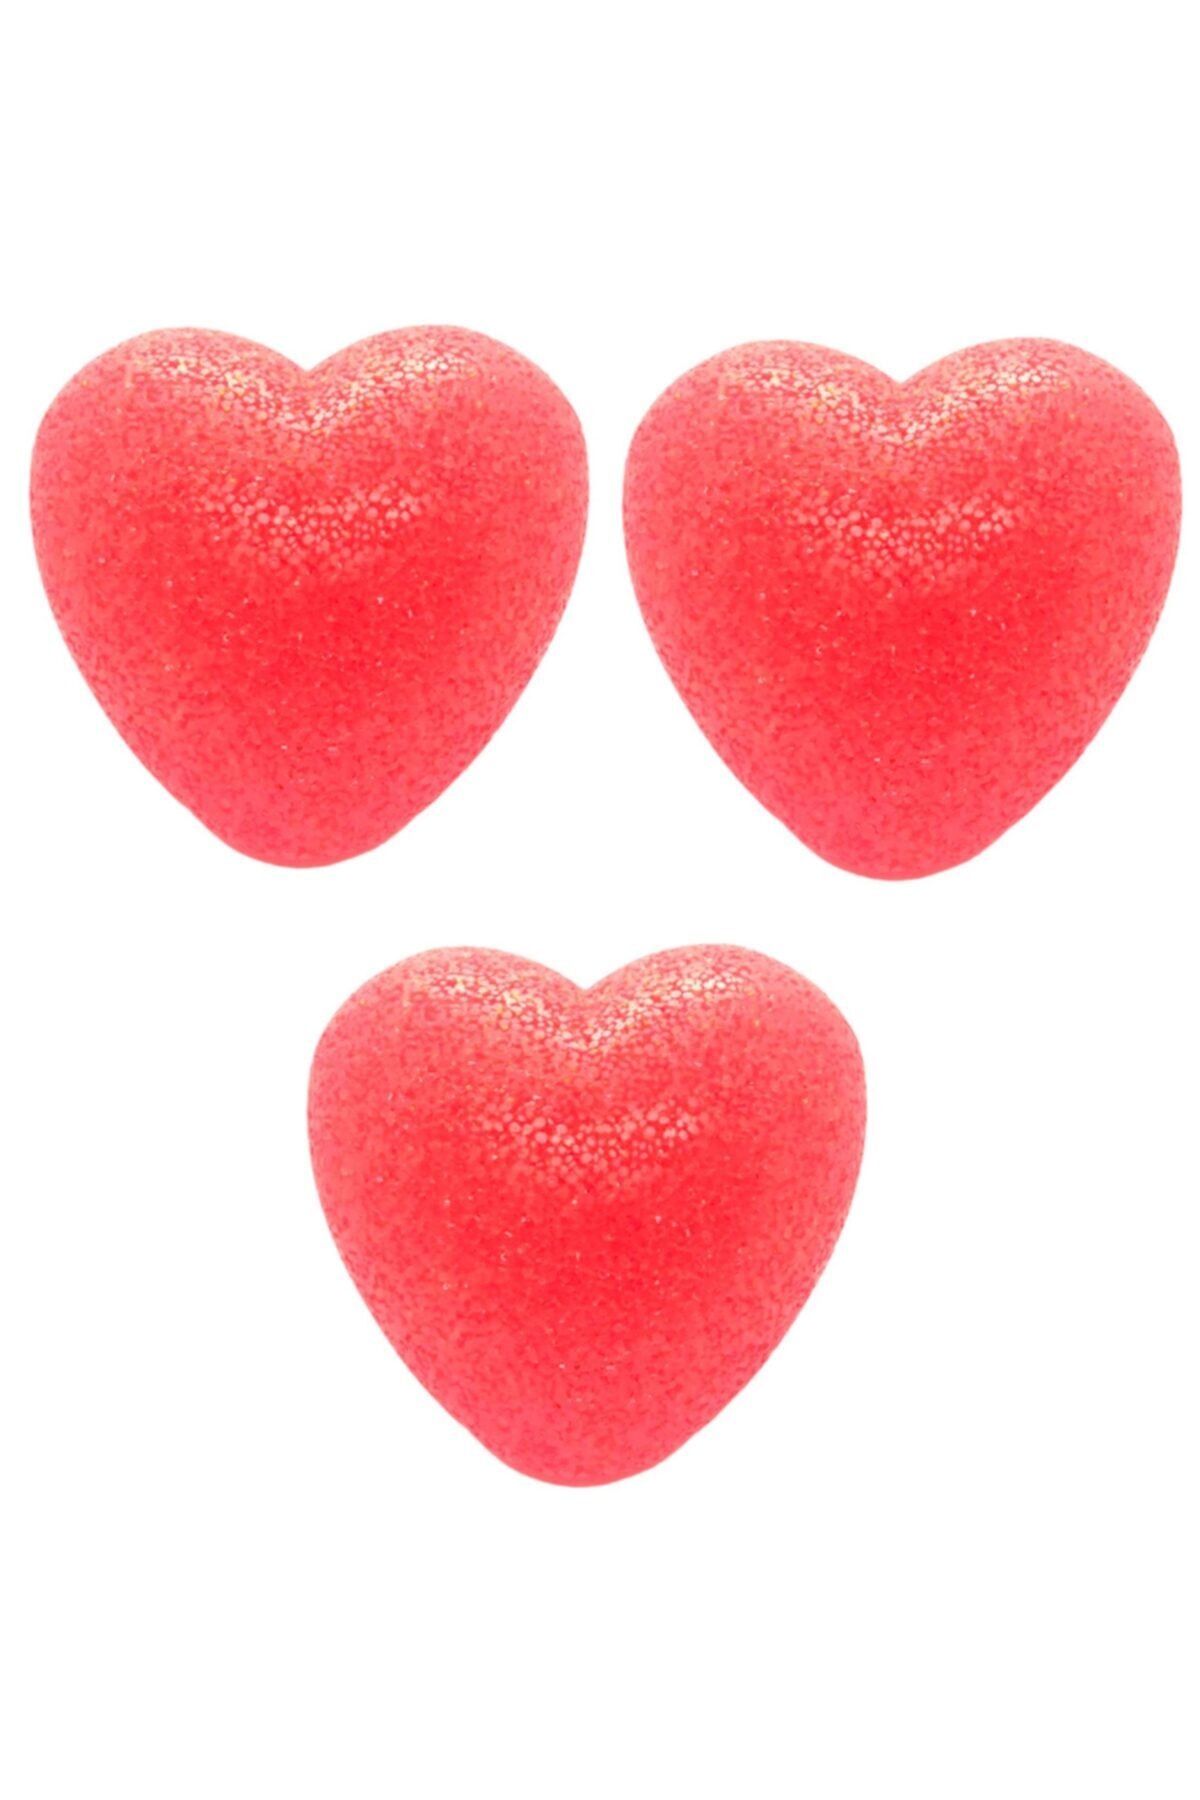 Sevgililer Günü Led Işıklı Kırmızı Kalp Hediye Kutusu Içi Gece Lambası 3 Adet_0